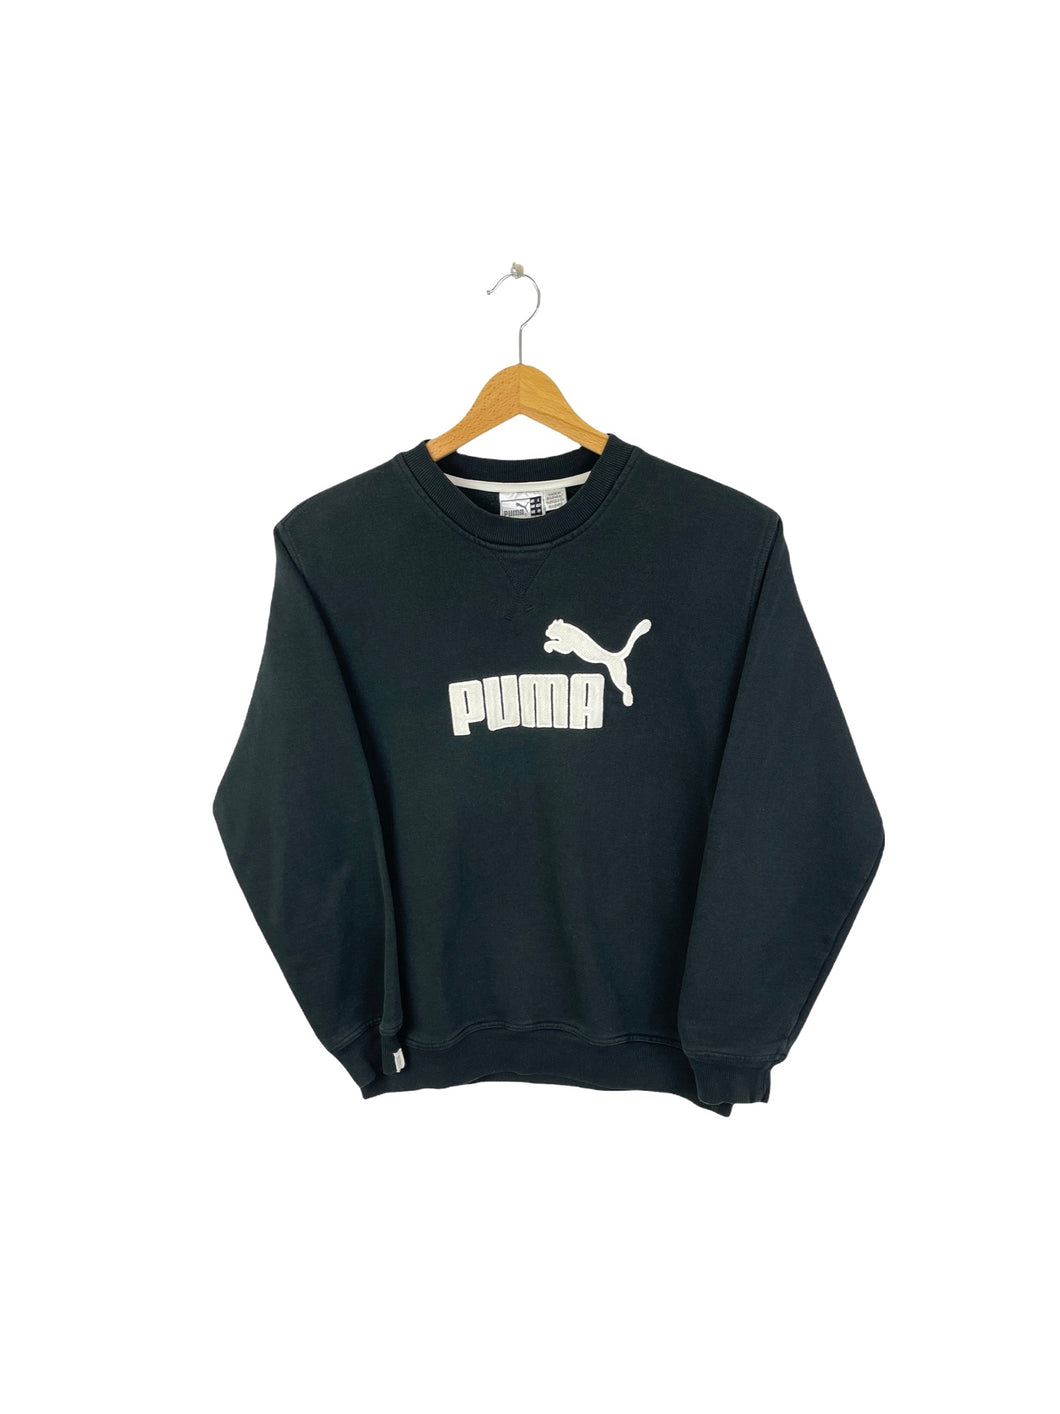 Puma Sweatshirt - XXSmall